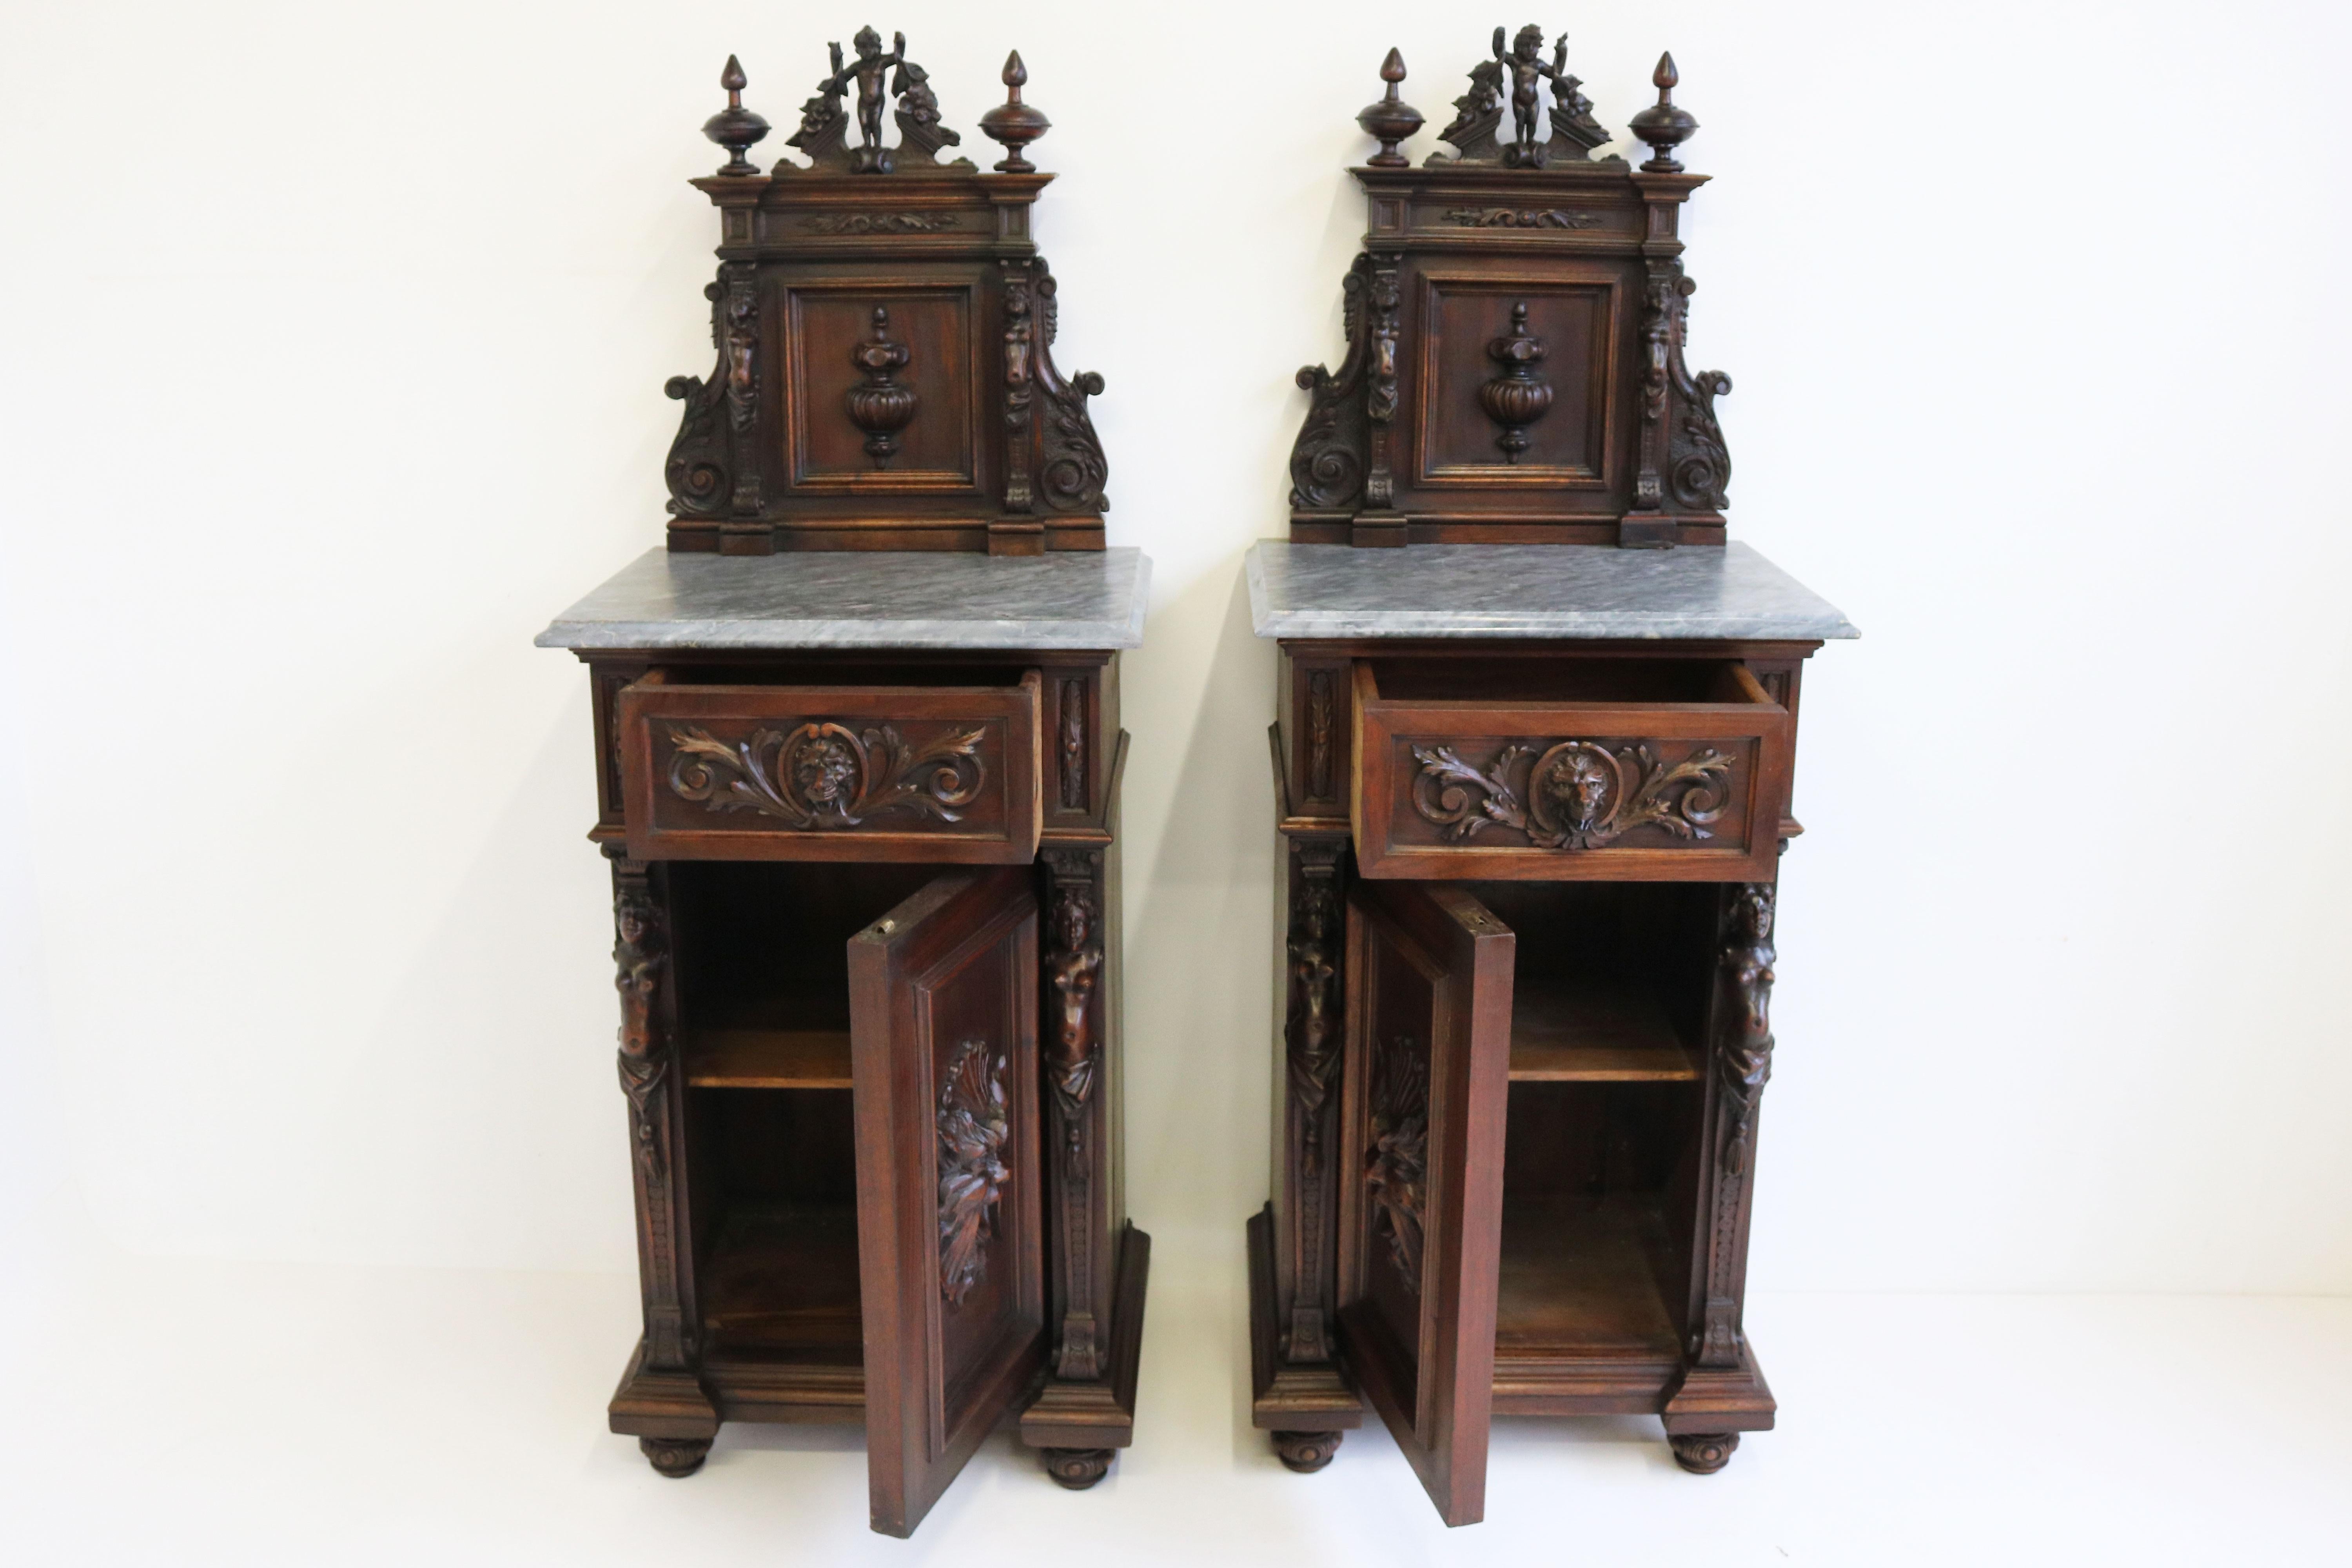 Antique 19th Century Italian Renaissance Revival Bedside Tables / Nightstands In Good Condition For Sale In Ijzendijke, NL